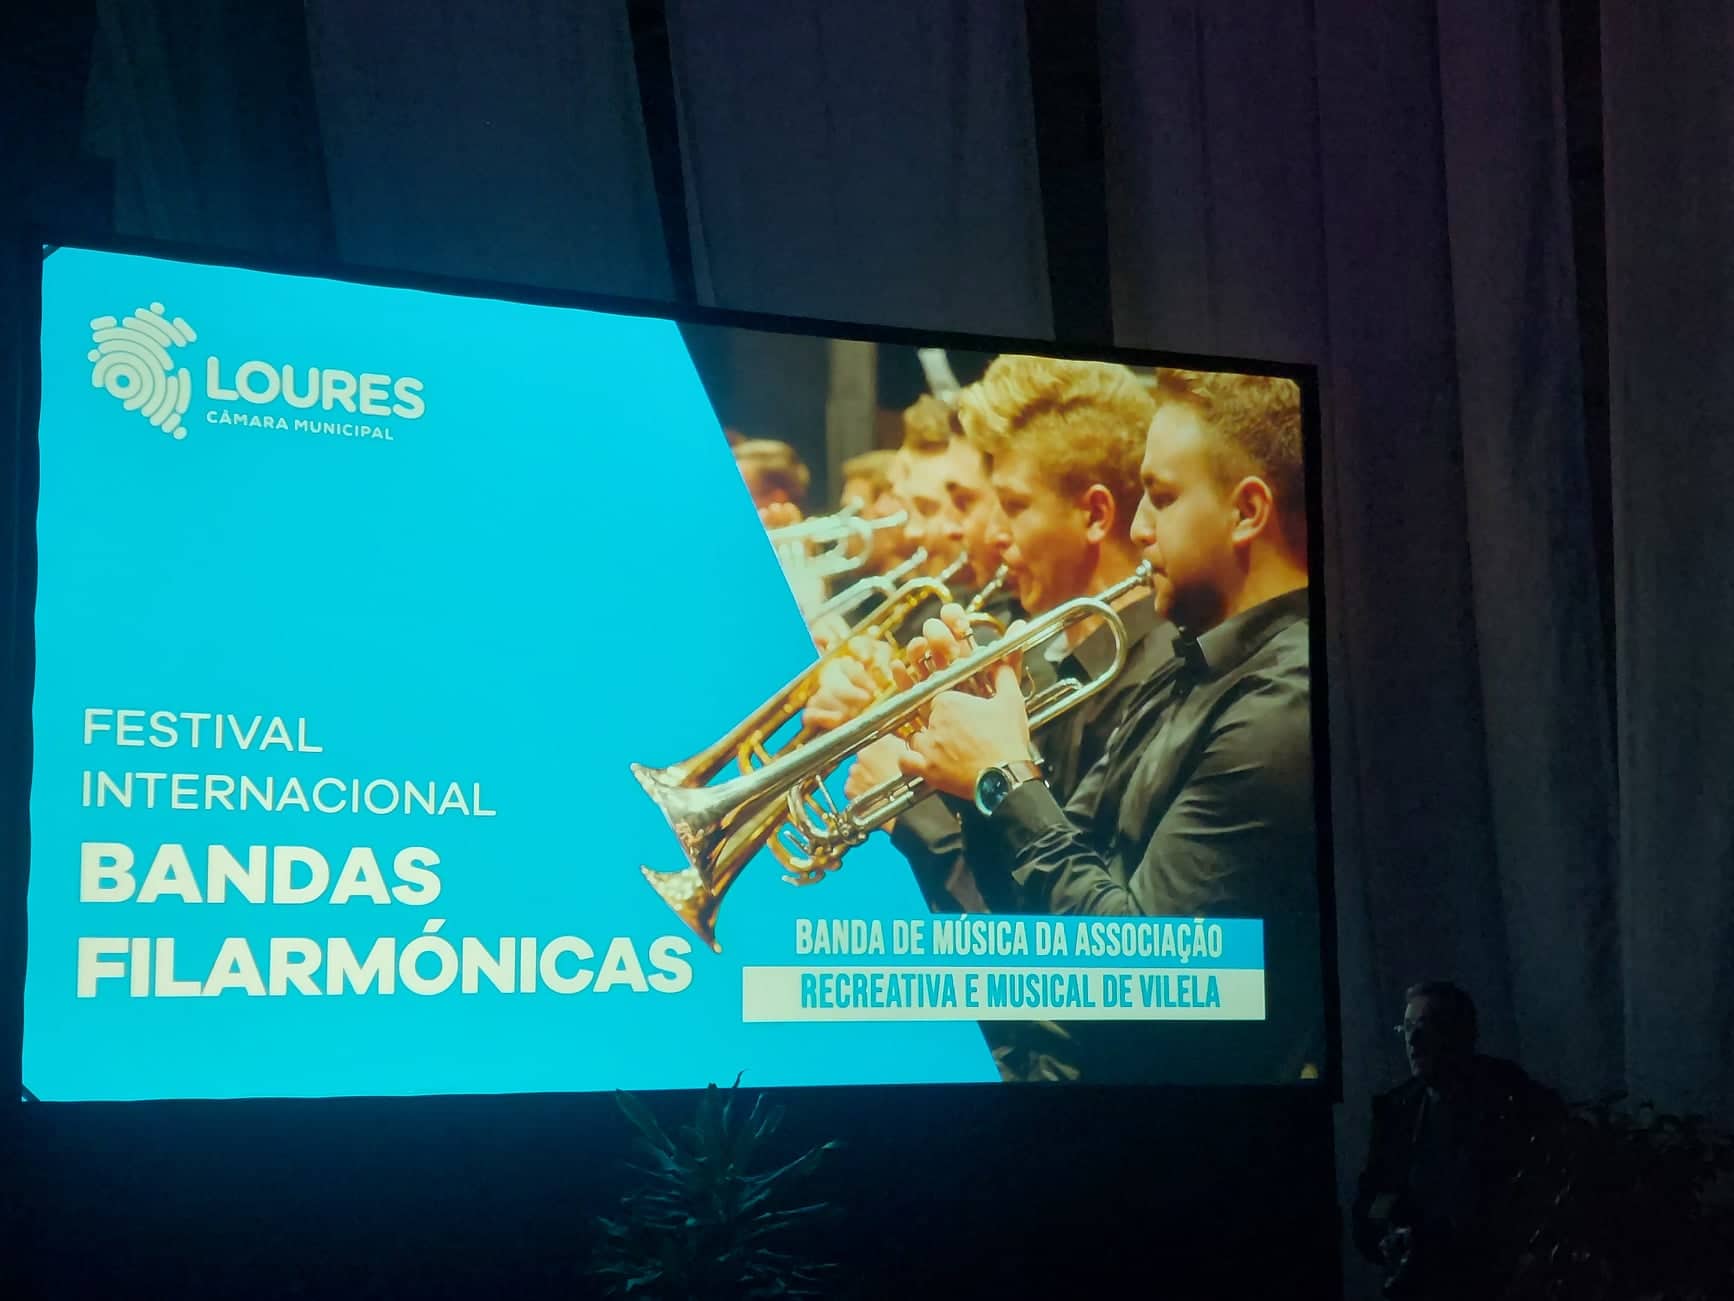 Festival Internacional de Bandas Filarmónicas e Orquestras Ligeiras de Loures – A Freguesia de Fanhões marcou presença neste importante acontecimento Cultural!